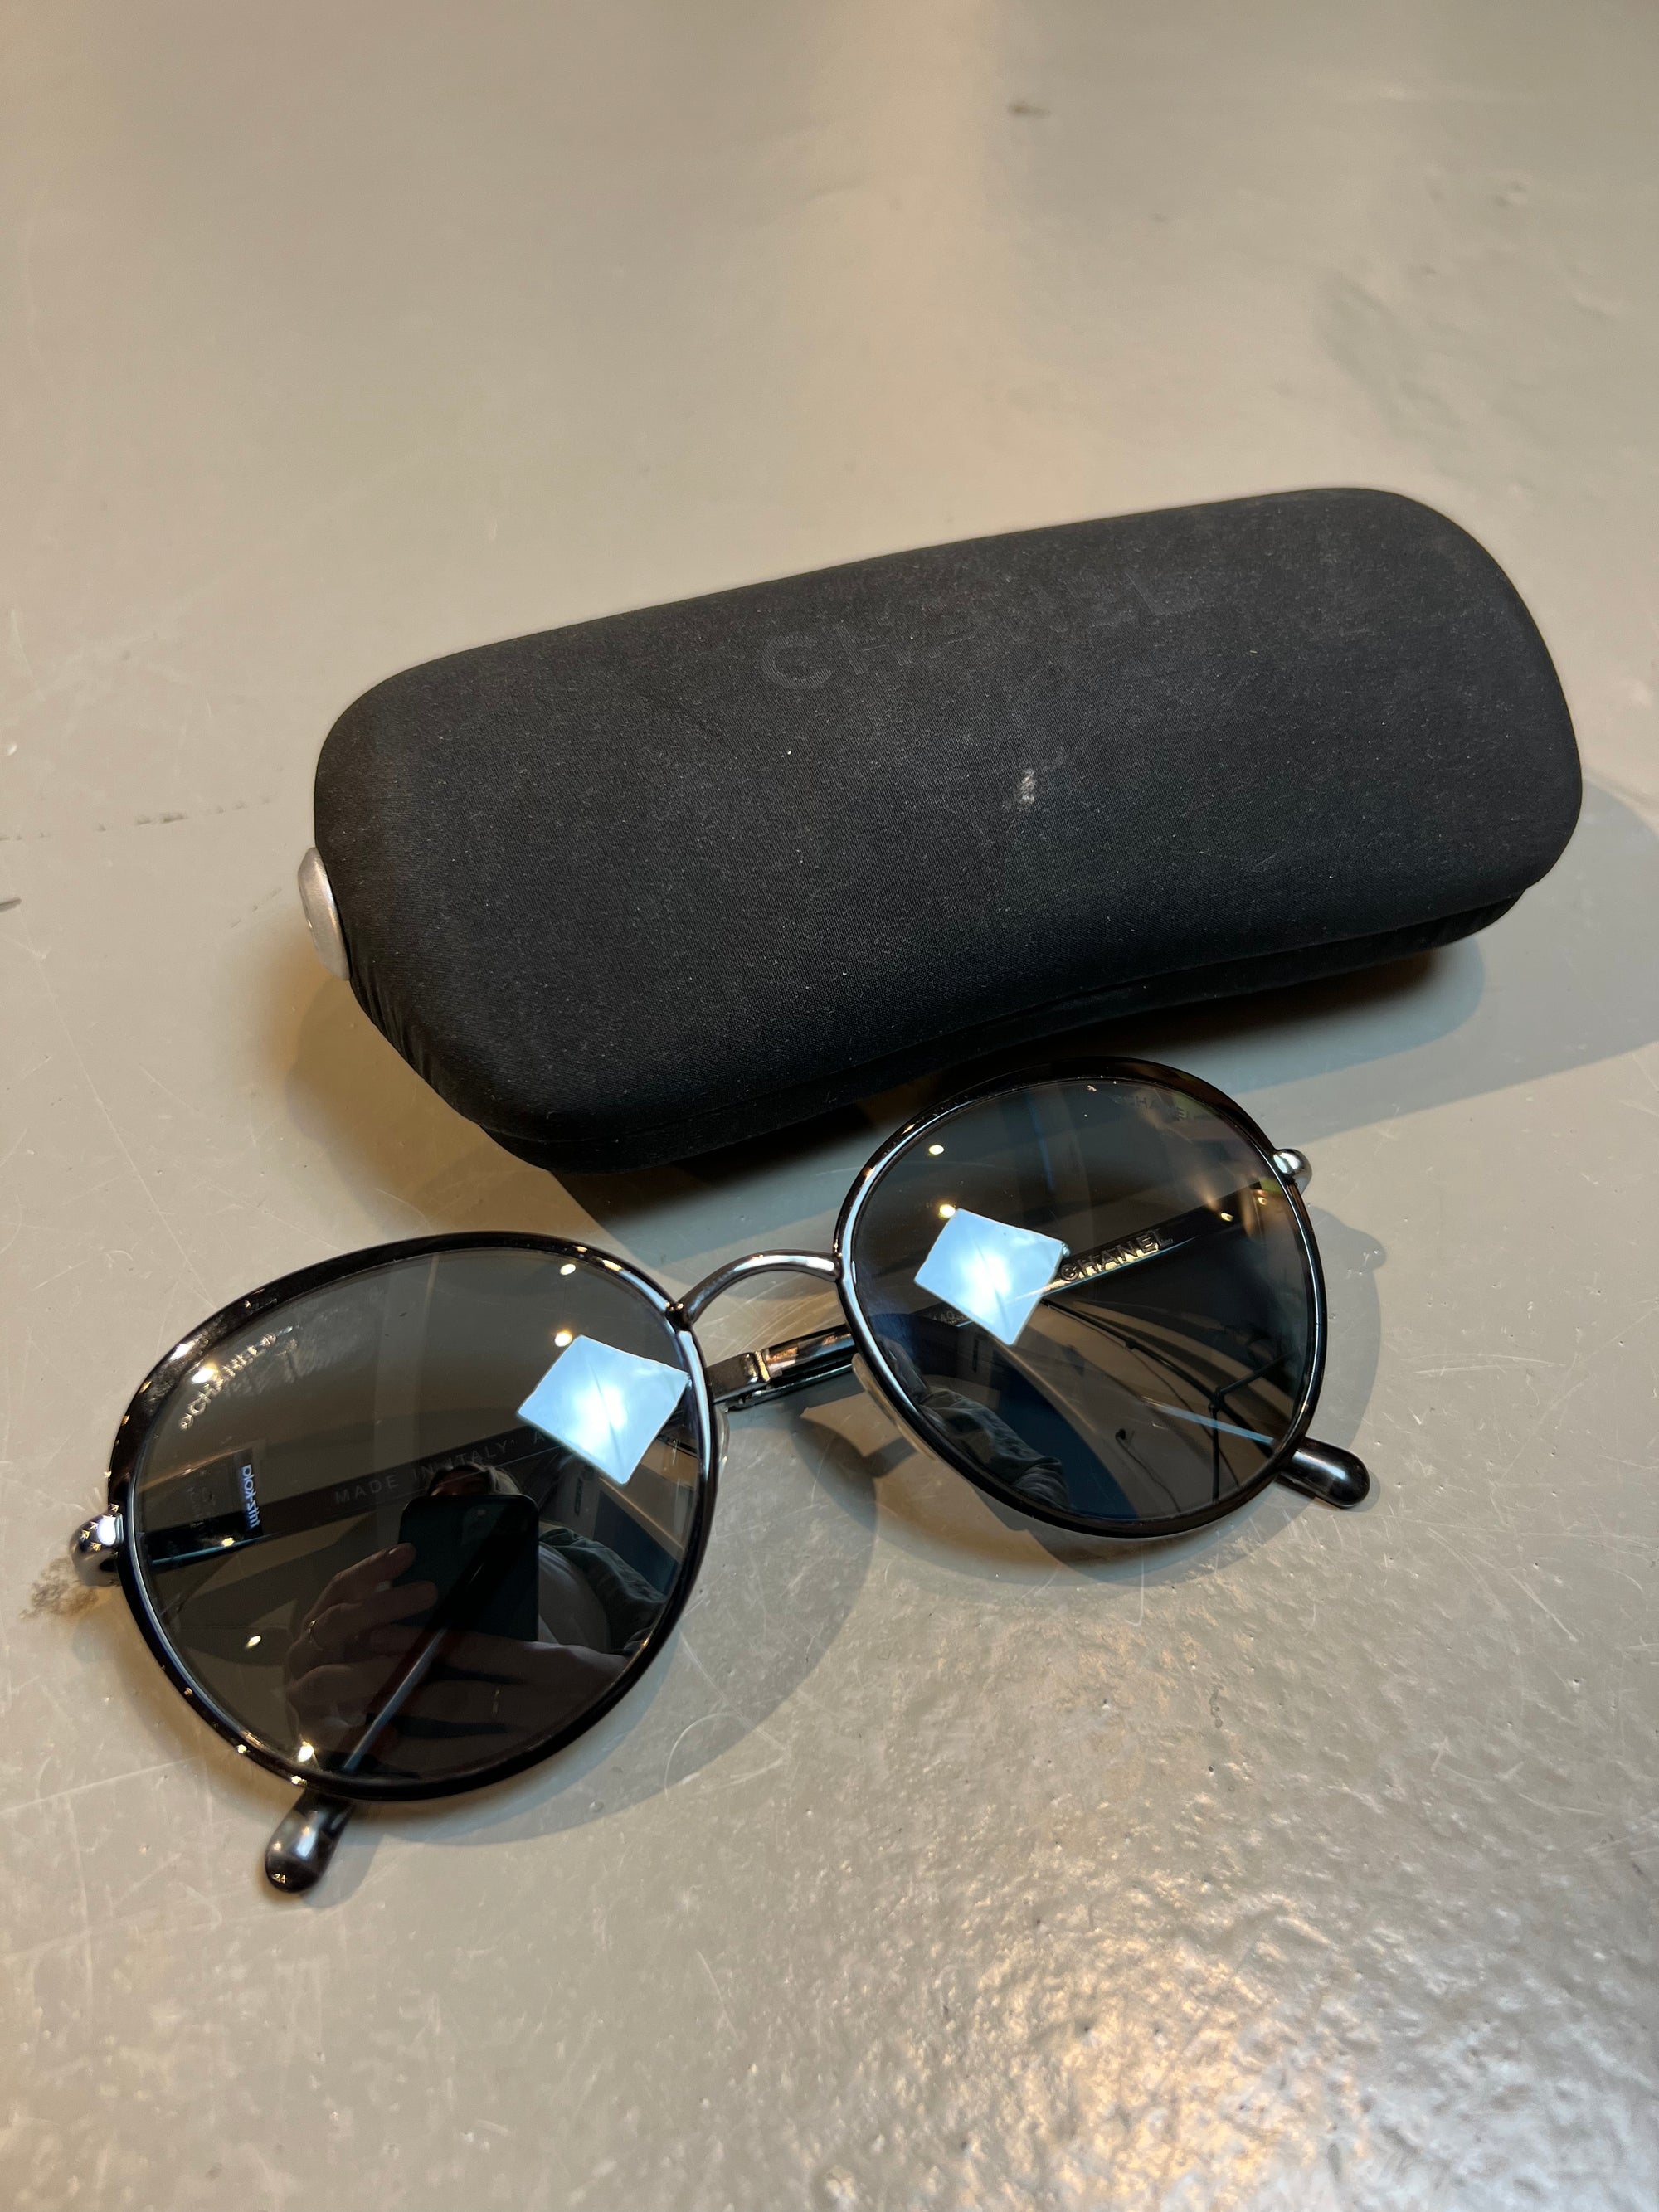 Produktbild einer runden Chanel Sonnenbrille in schwarz vor grauem Hintergrund.